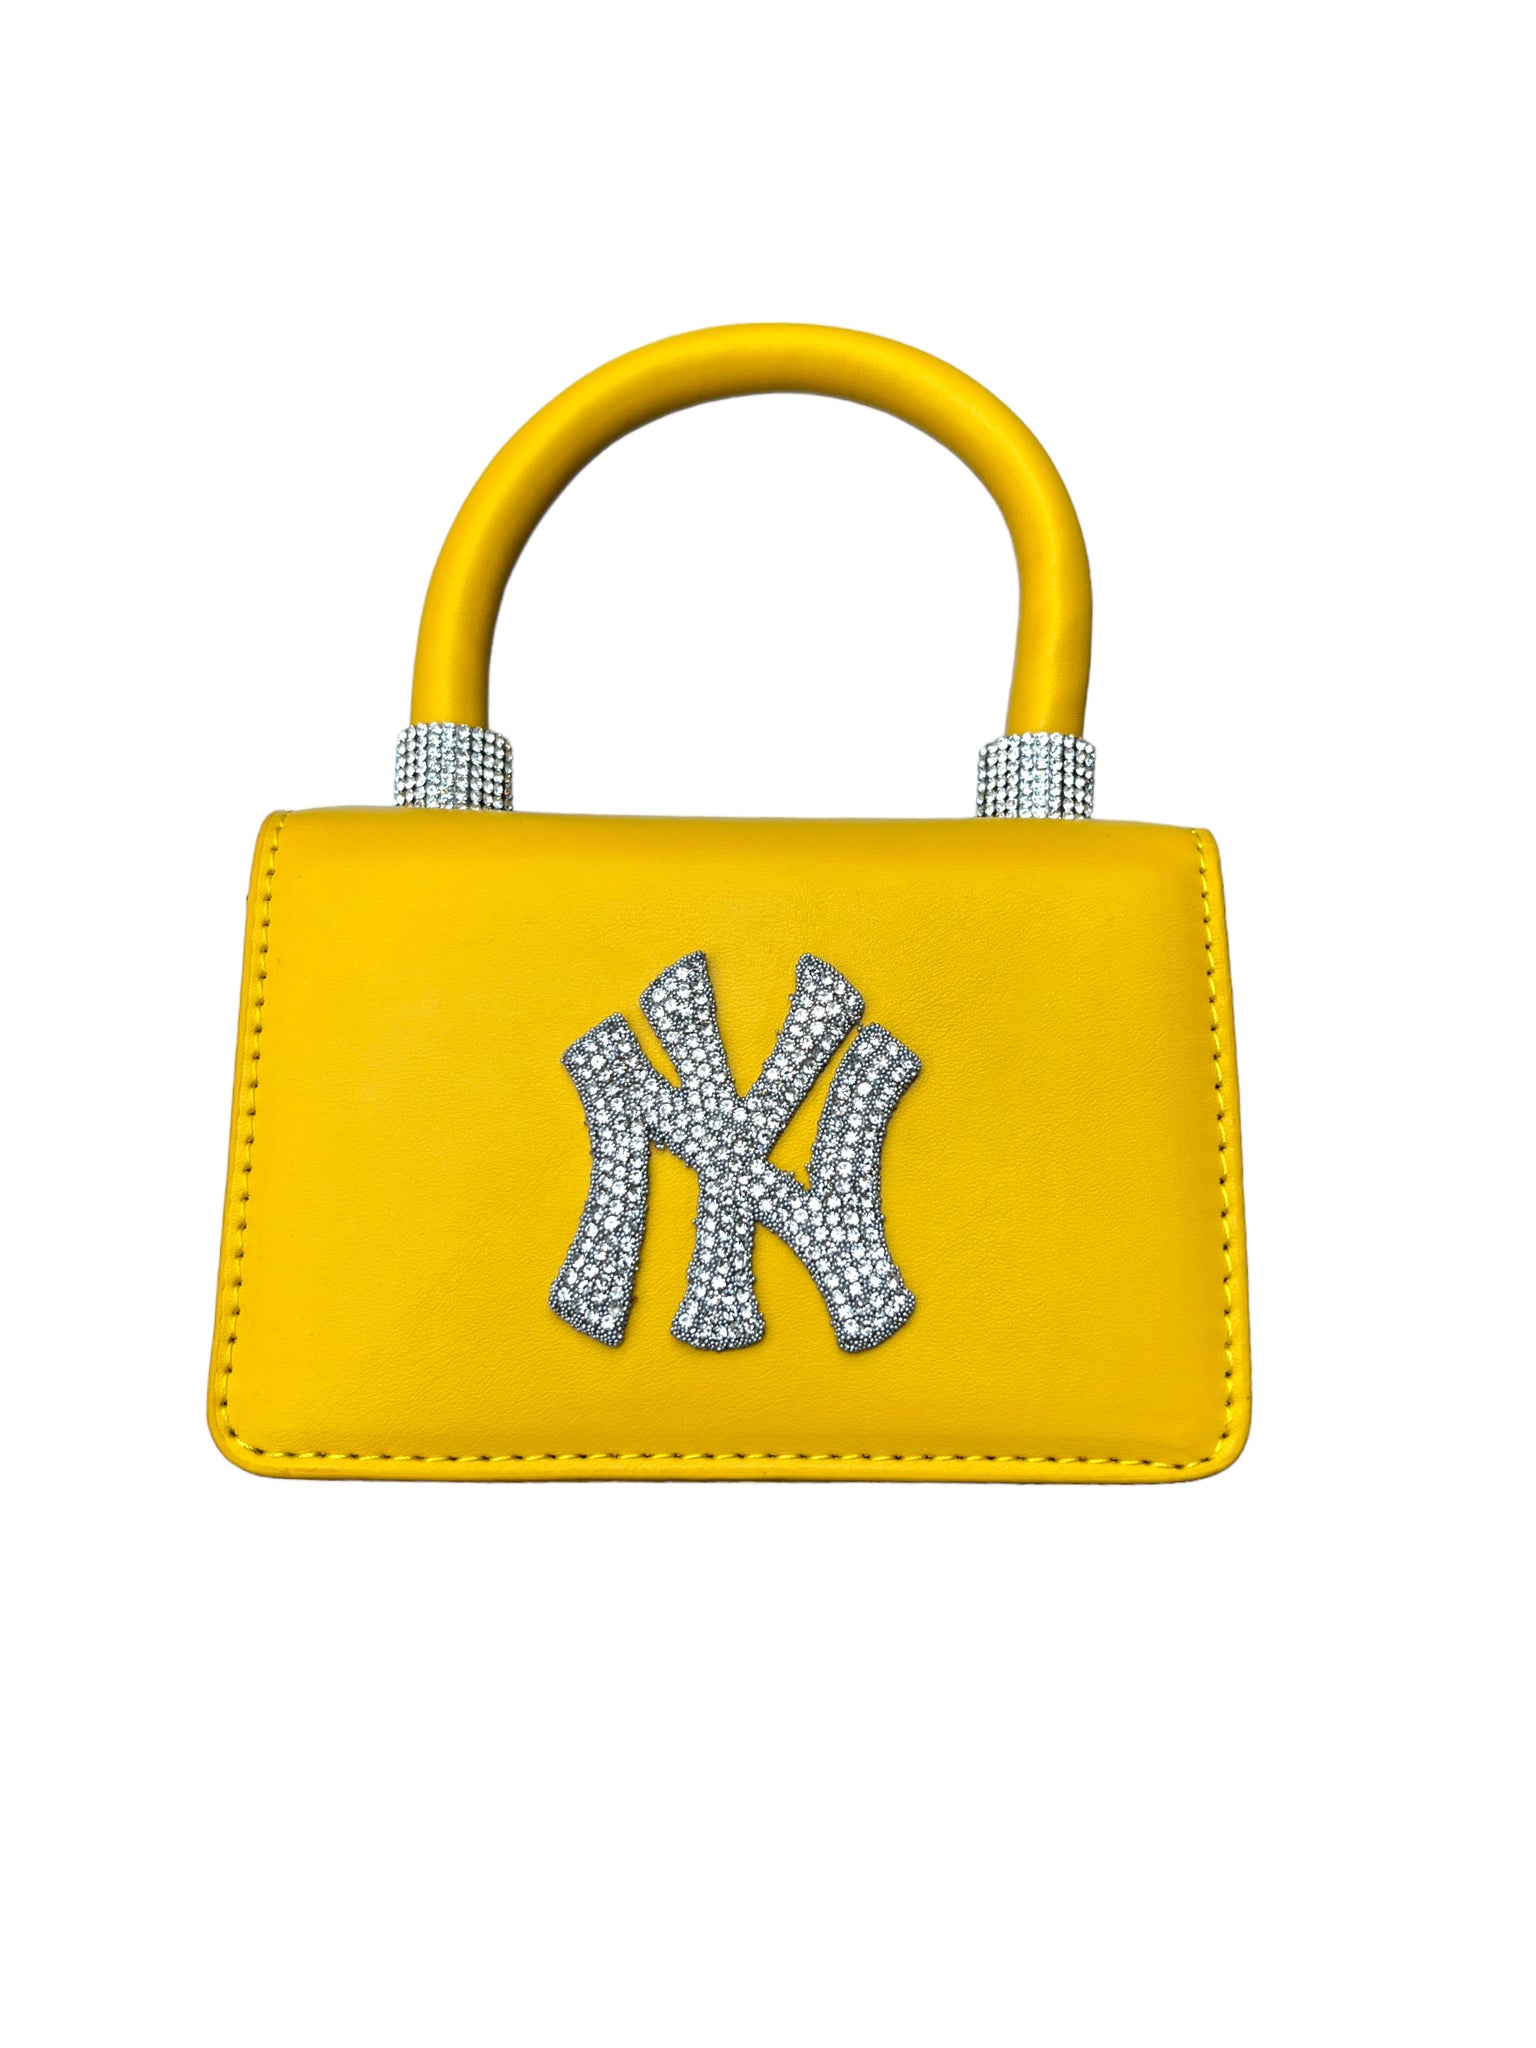 New York Yankees, Bags, New York Yankees Purse Yellowmustard